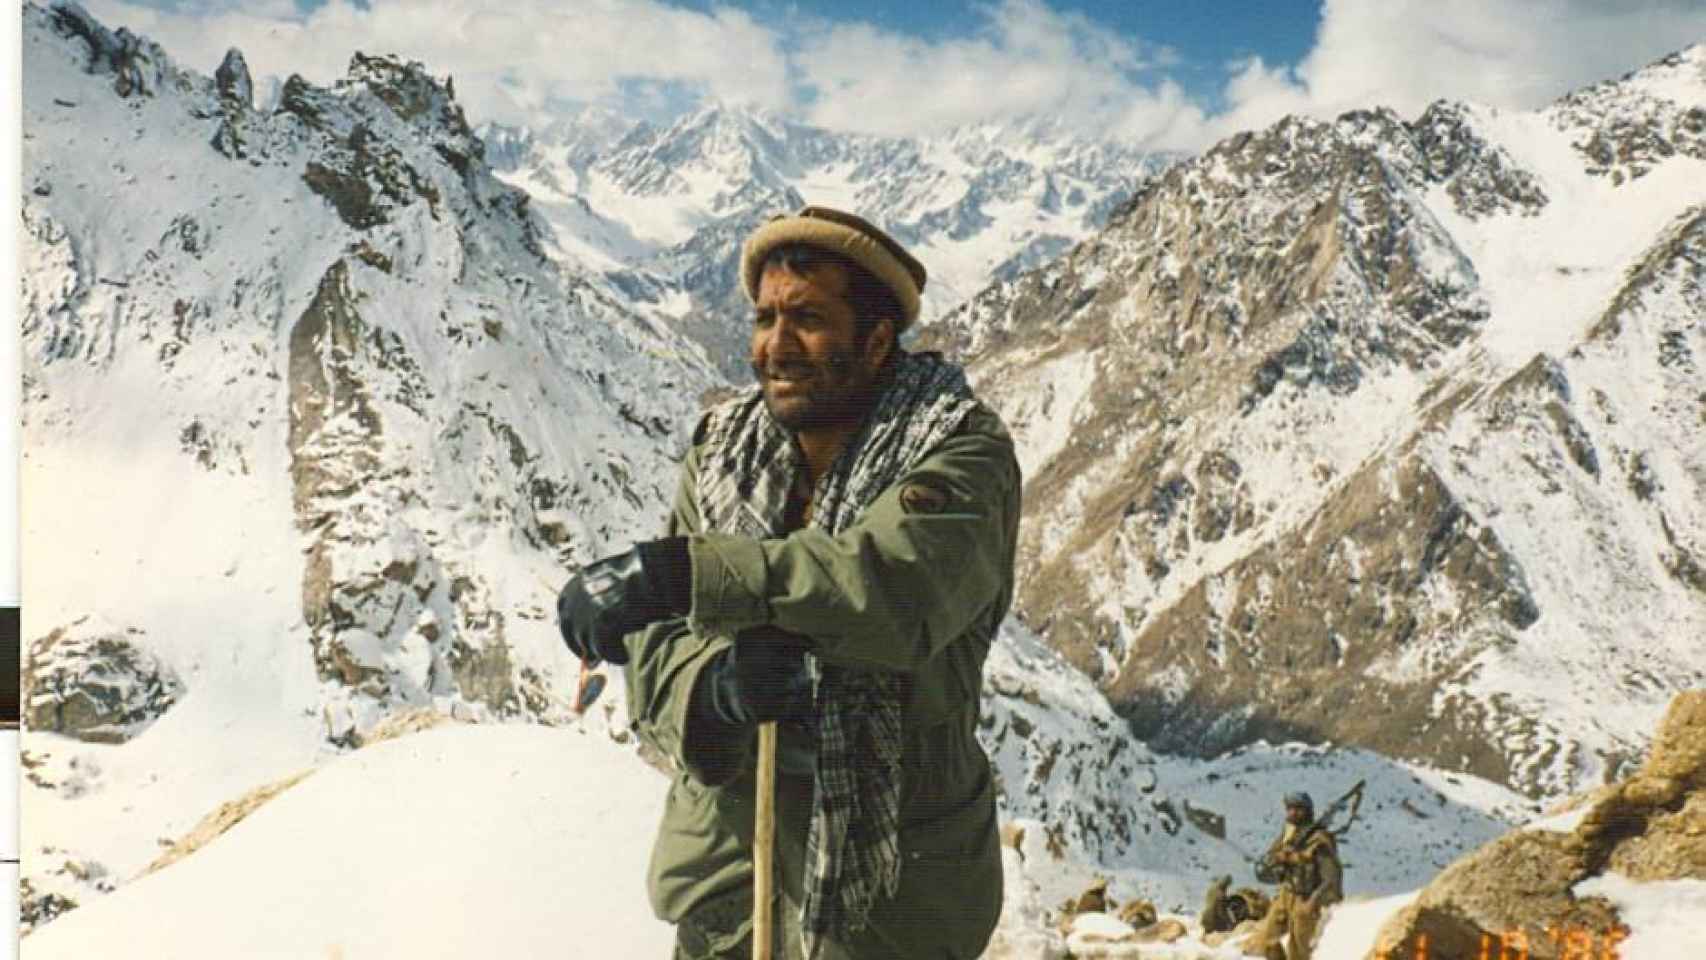 Masood Khalili, en los años 80 en las montañas de Afganistán, en su etapa contra la ocupación soviética. Álbum personal.